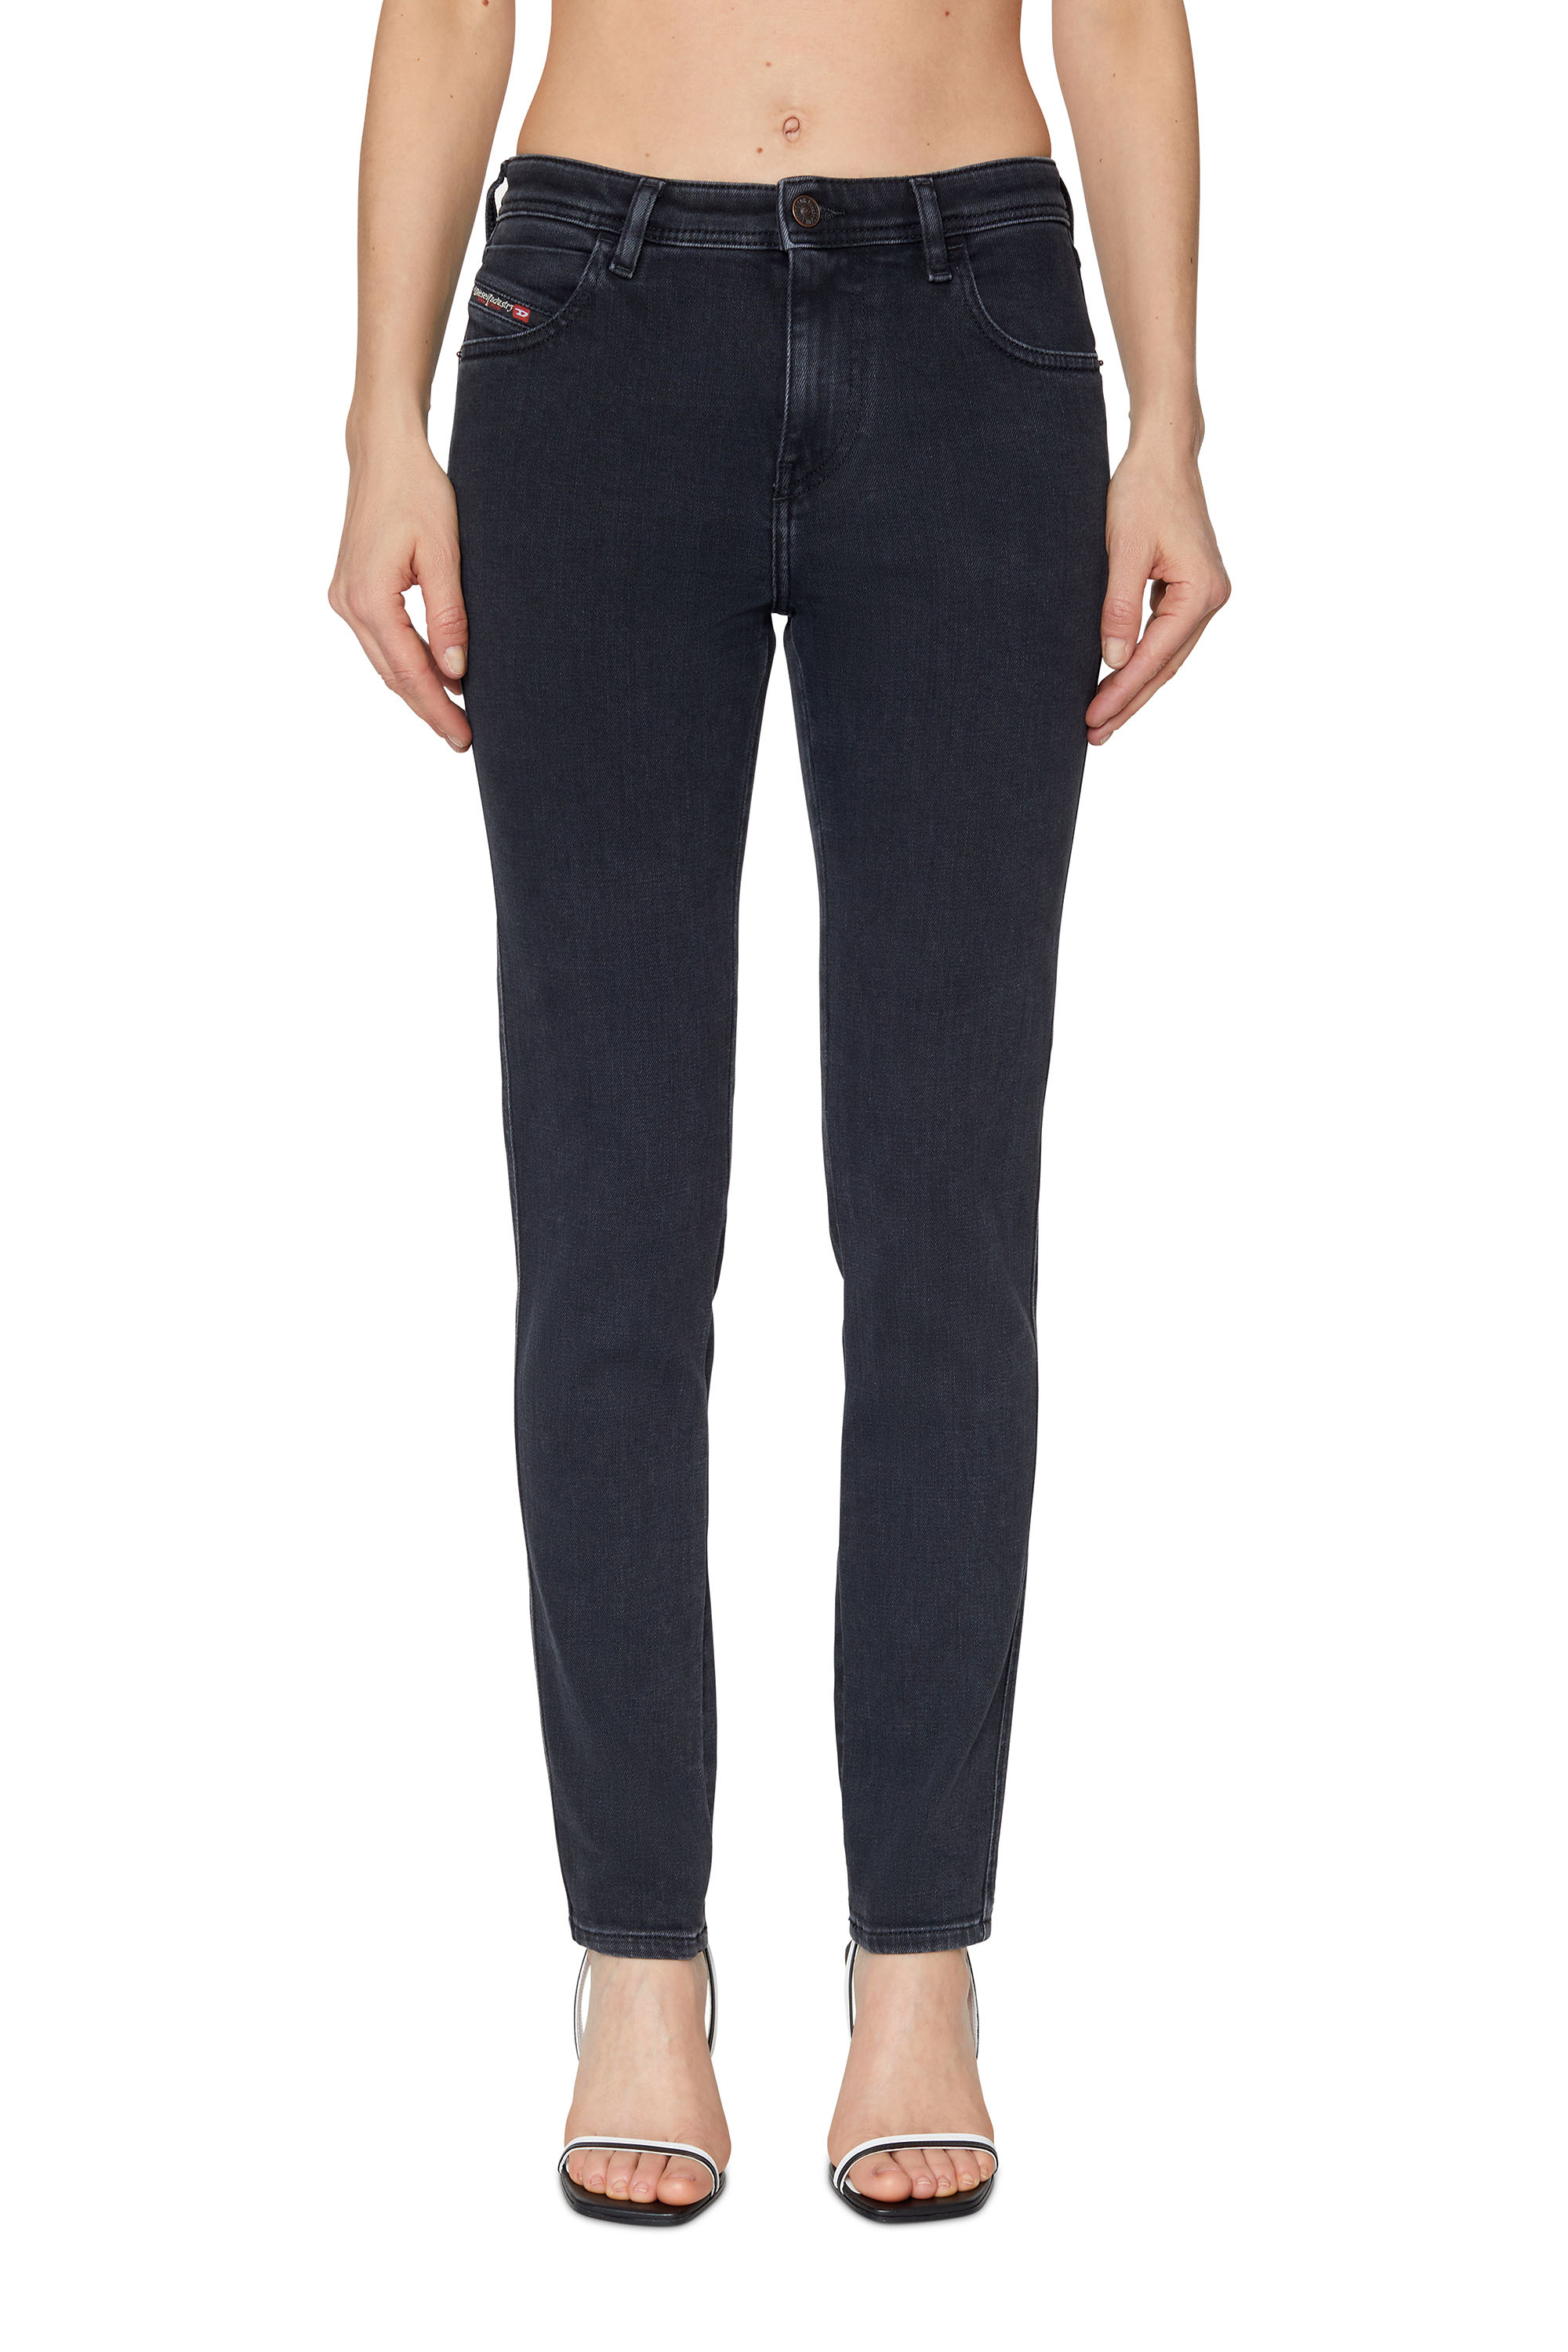 2015 BABHILA Z870G Skinny Jeans, Noir/Gris foncé - Jeans